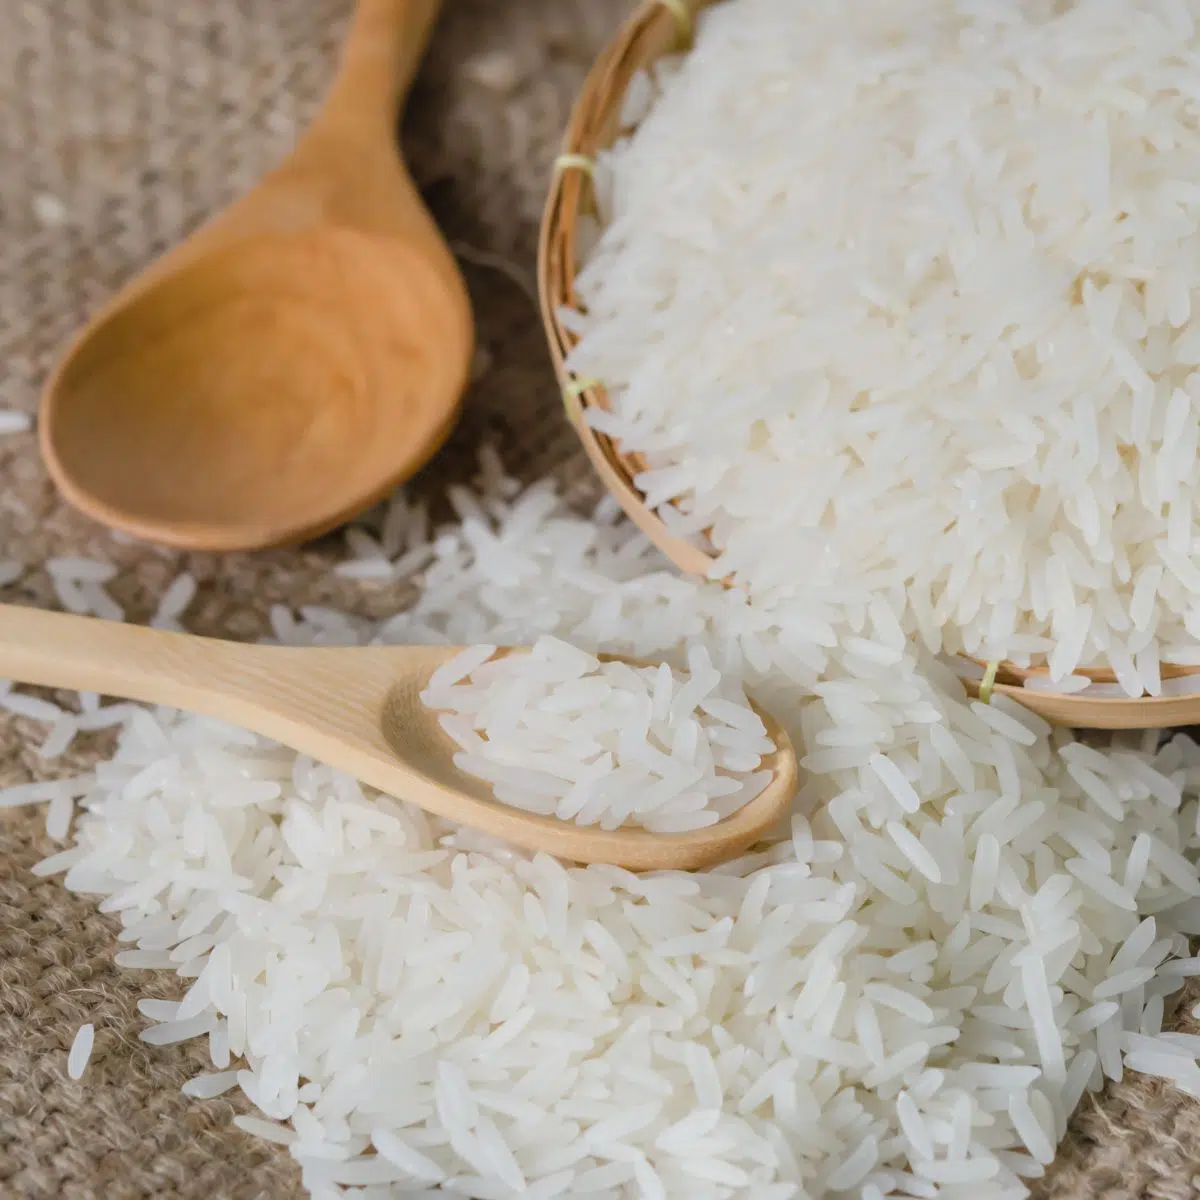 Kvadratna slika bijele riže u zdjeli.